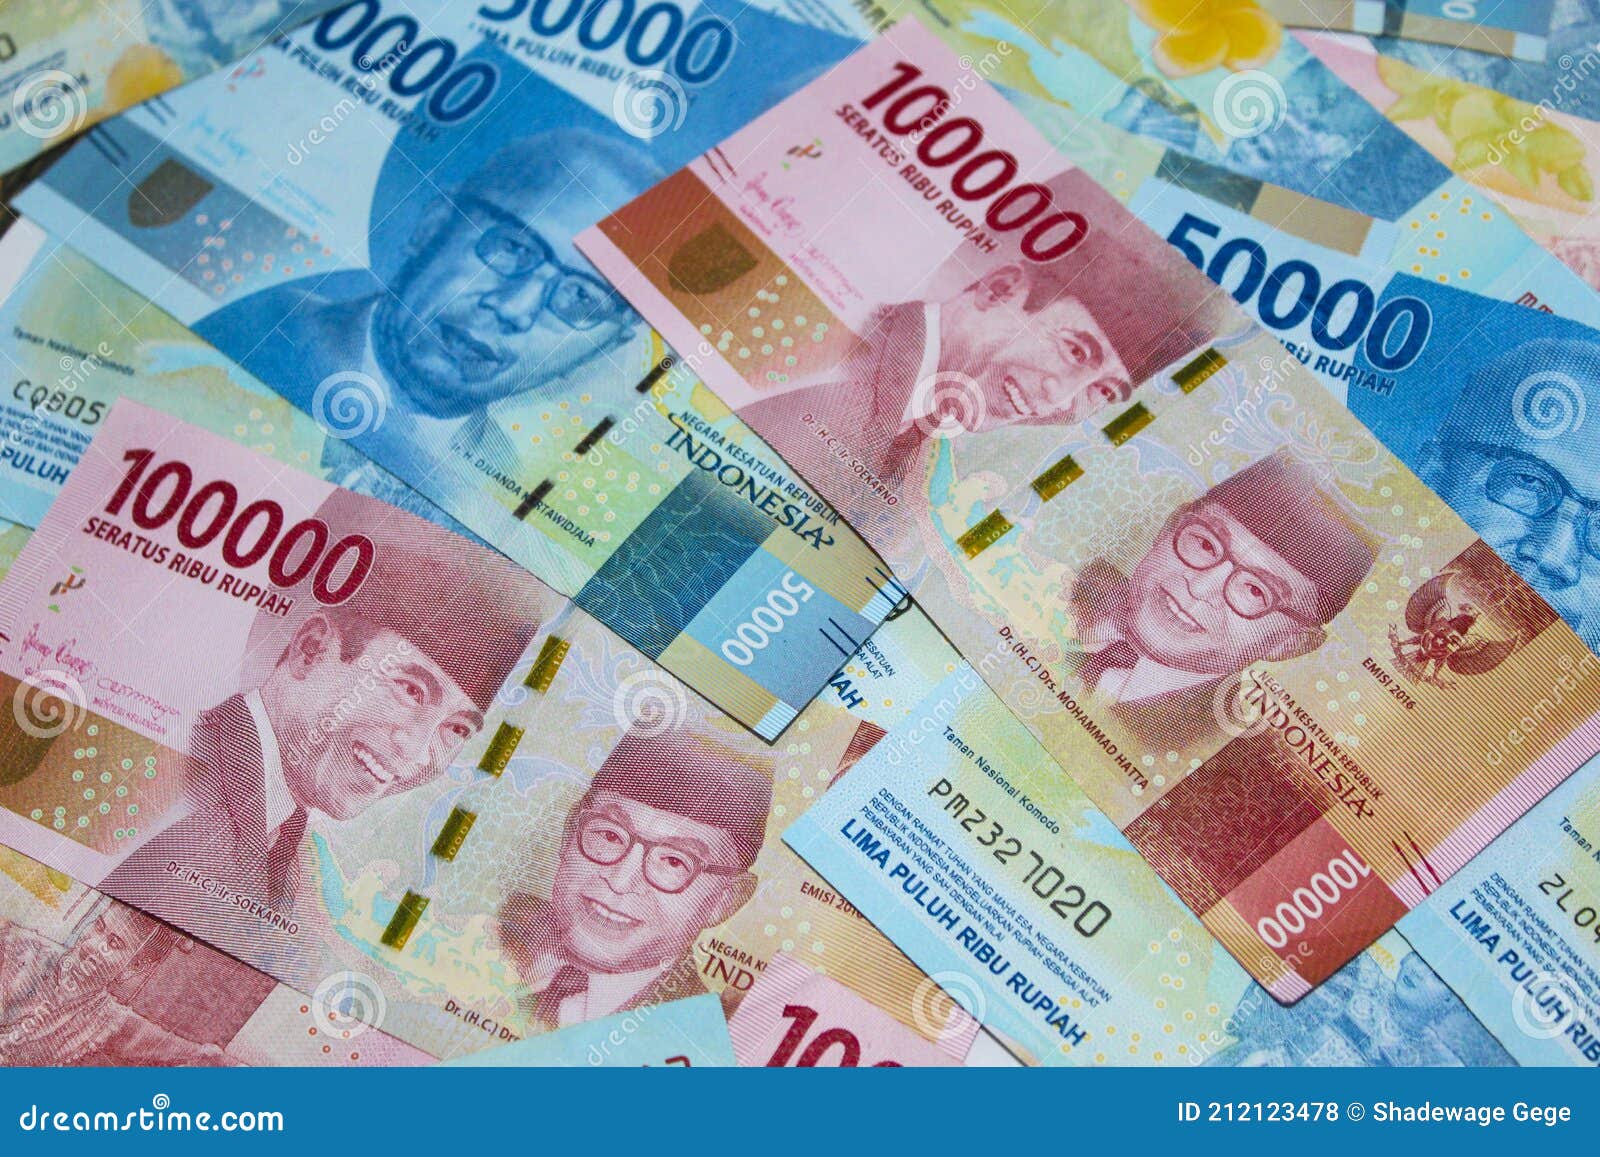 背景中的印尼盾. 价值10万印尼盾的印尼盾系列钞票 库存照片. 图片 包括有 贷款, 计数, 纸张, 班卓琵琶 - 191548276